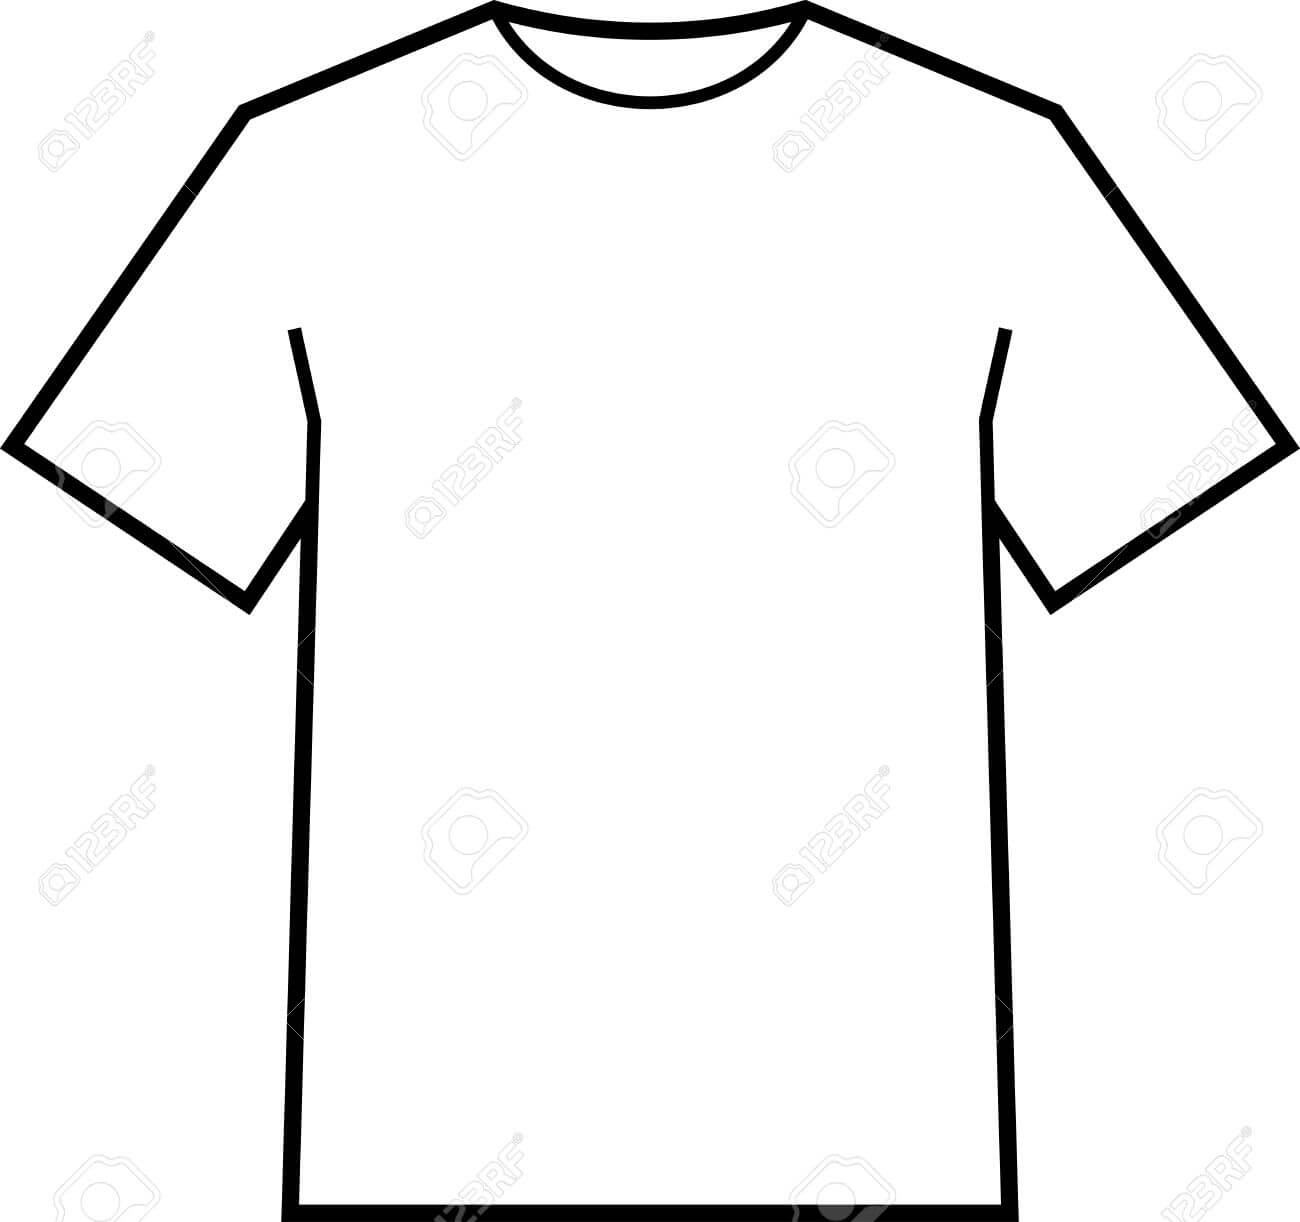 Blank T Shirt Template Vector Regarding Blank Tee Shirt Template